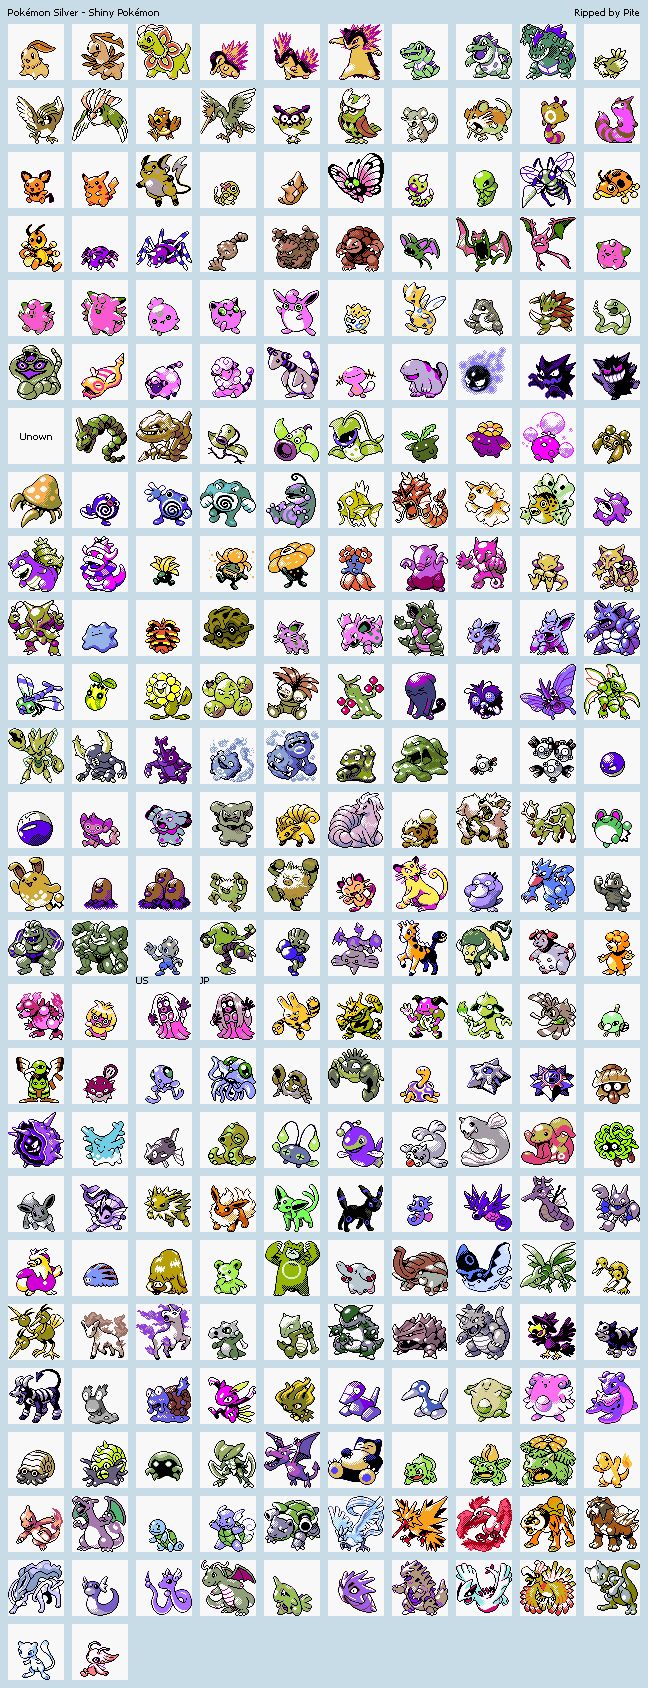 Pokémon: Silver Version wallpaper, Video Game, HQ Pokémon: Silver Version pictureK Wallpaper 2019